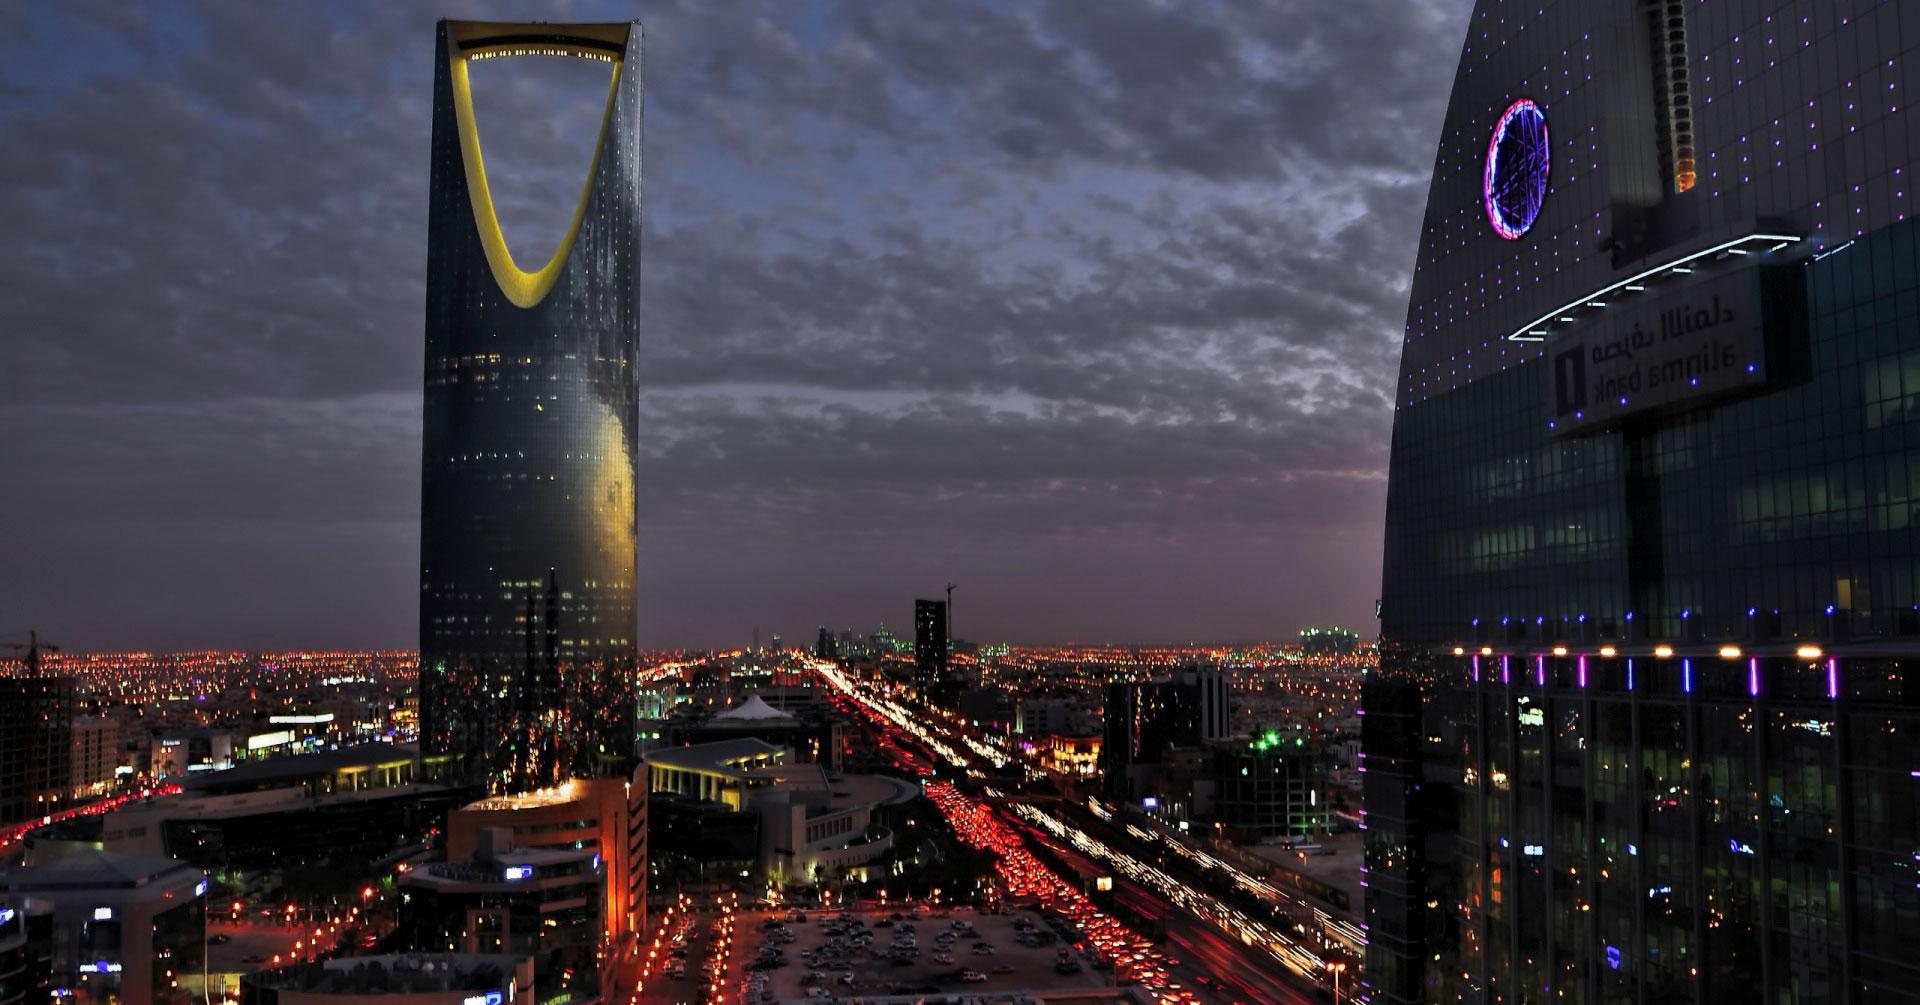 صور من الرياض , خلفيات لعاصمة السعوديه - صور حب